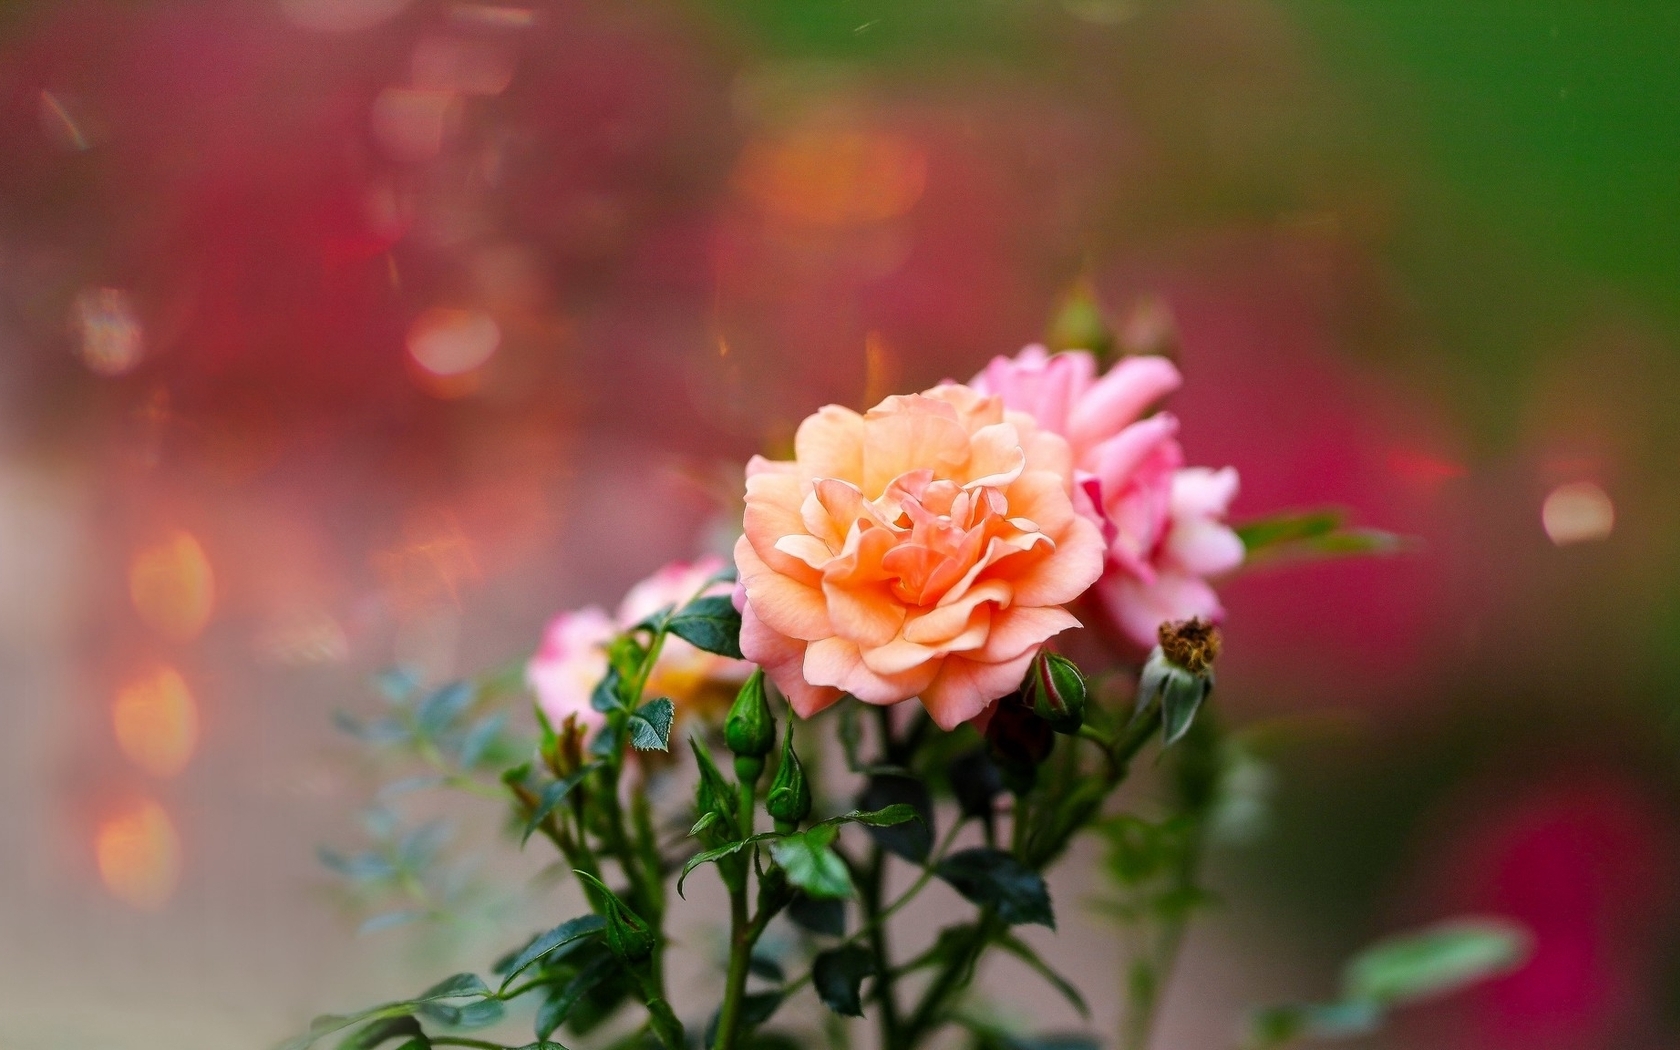 Картинка: Розы, цветы, красивые, размытый фон